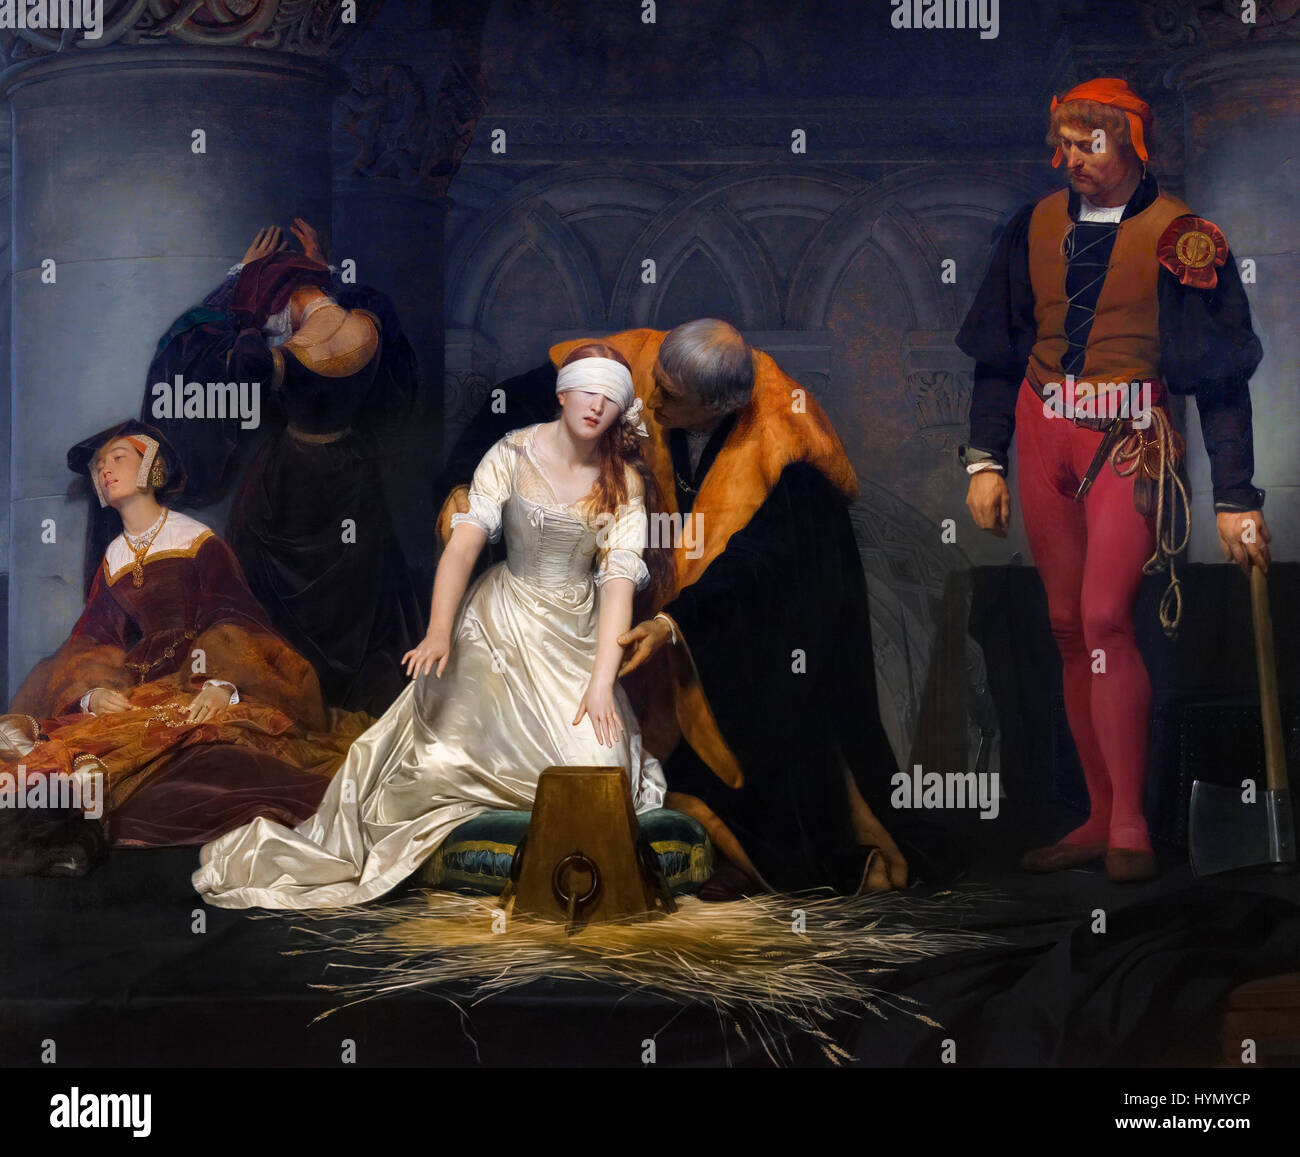 La ejecución de Juana Grey por Paul delaroche (1795-1856), óleo sobre lienzo, 1833. Lady Jane Grey reinó como reina de Inglaterra por 9 días en 1553. Foto de stock